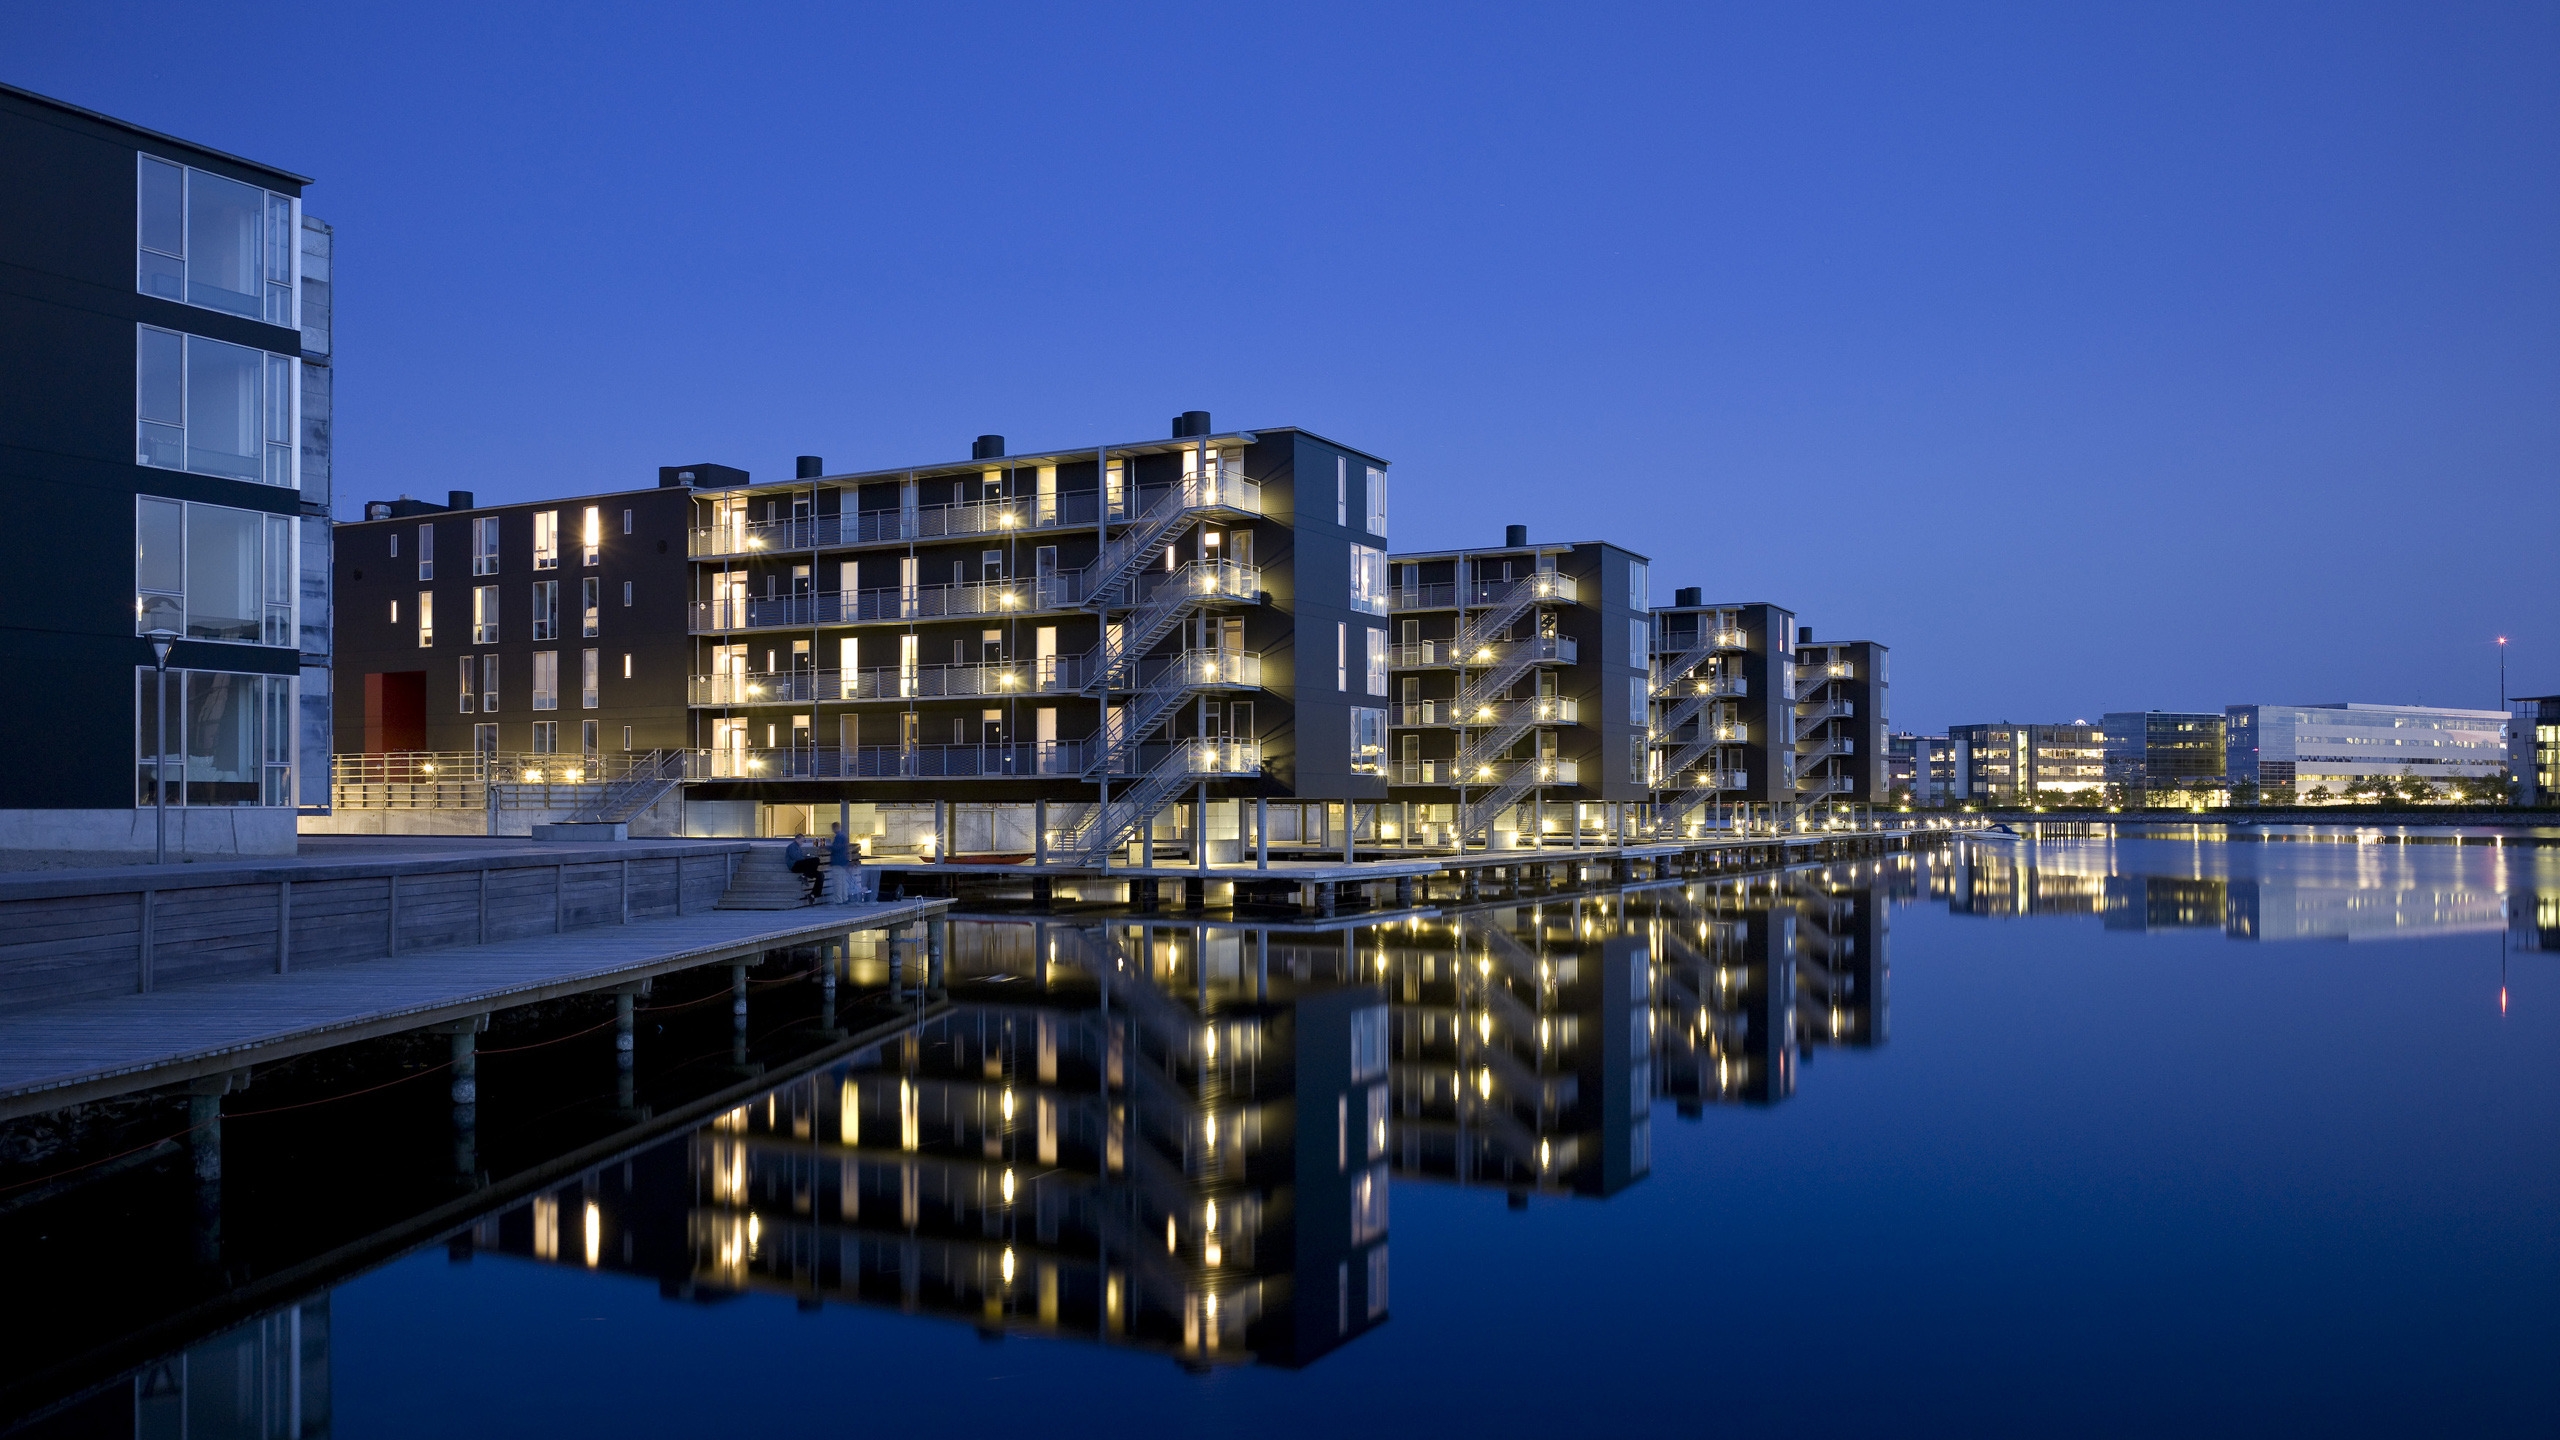 Teglvrkshavnen Block in Copenhagen for 2560x1440 HDTV resolution